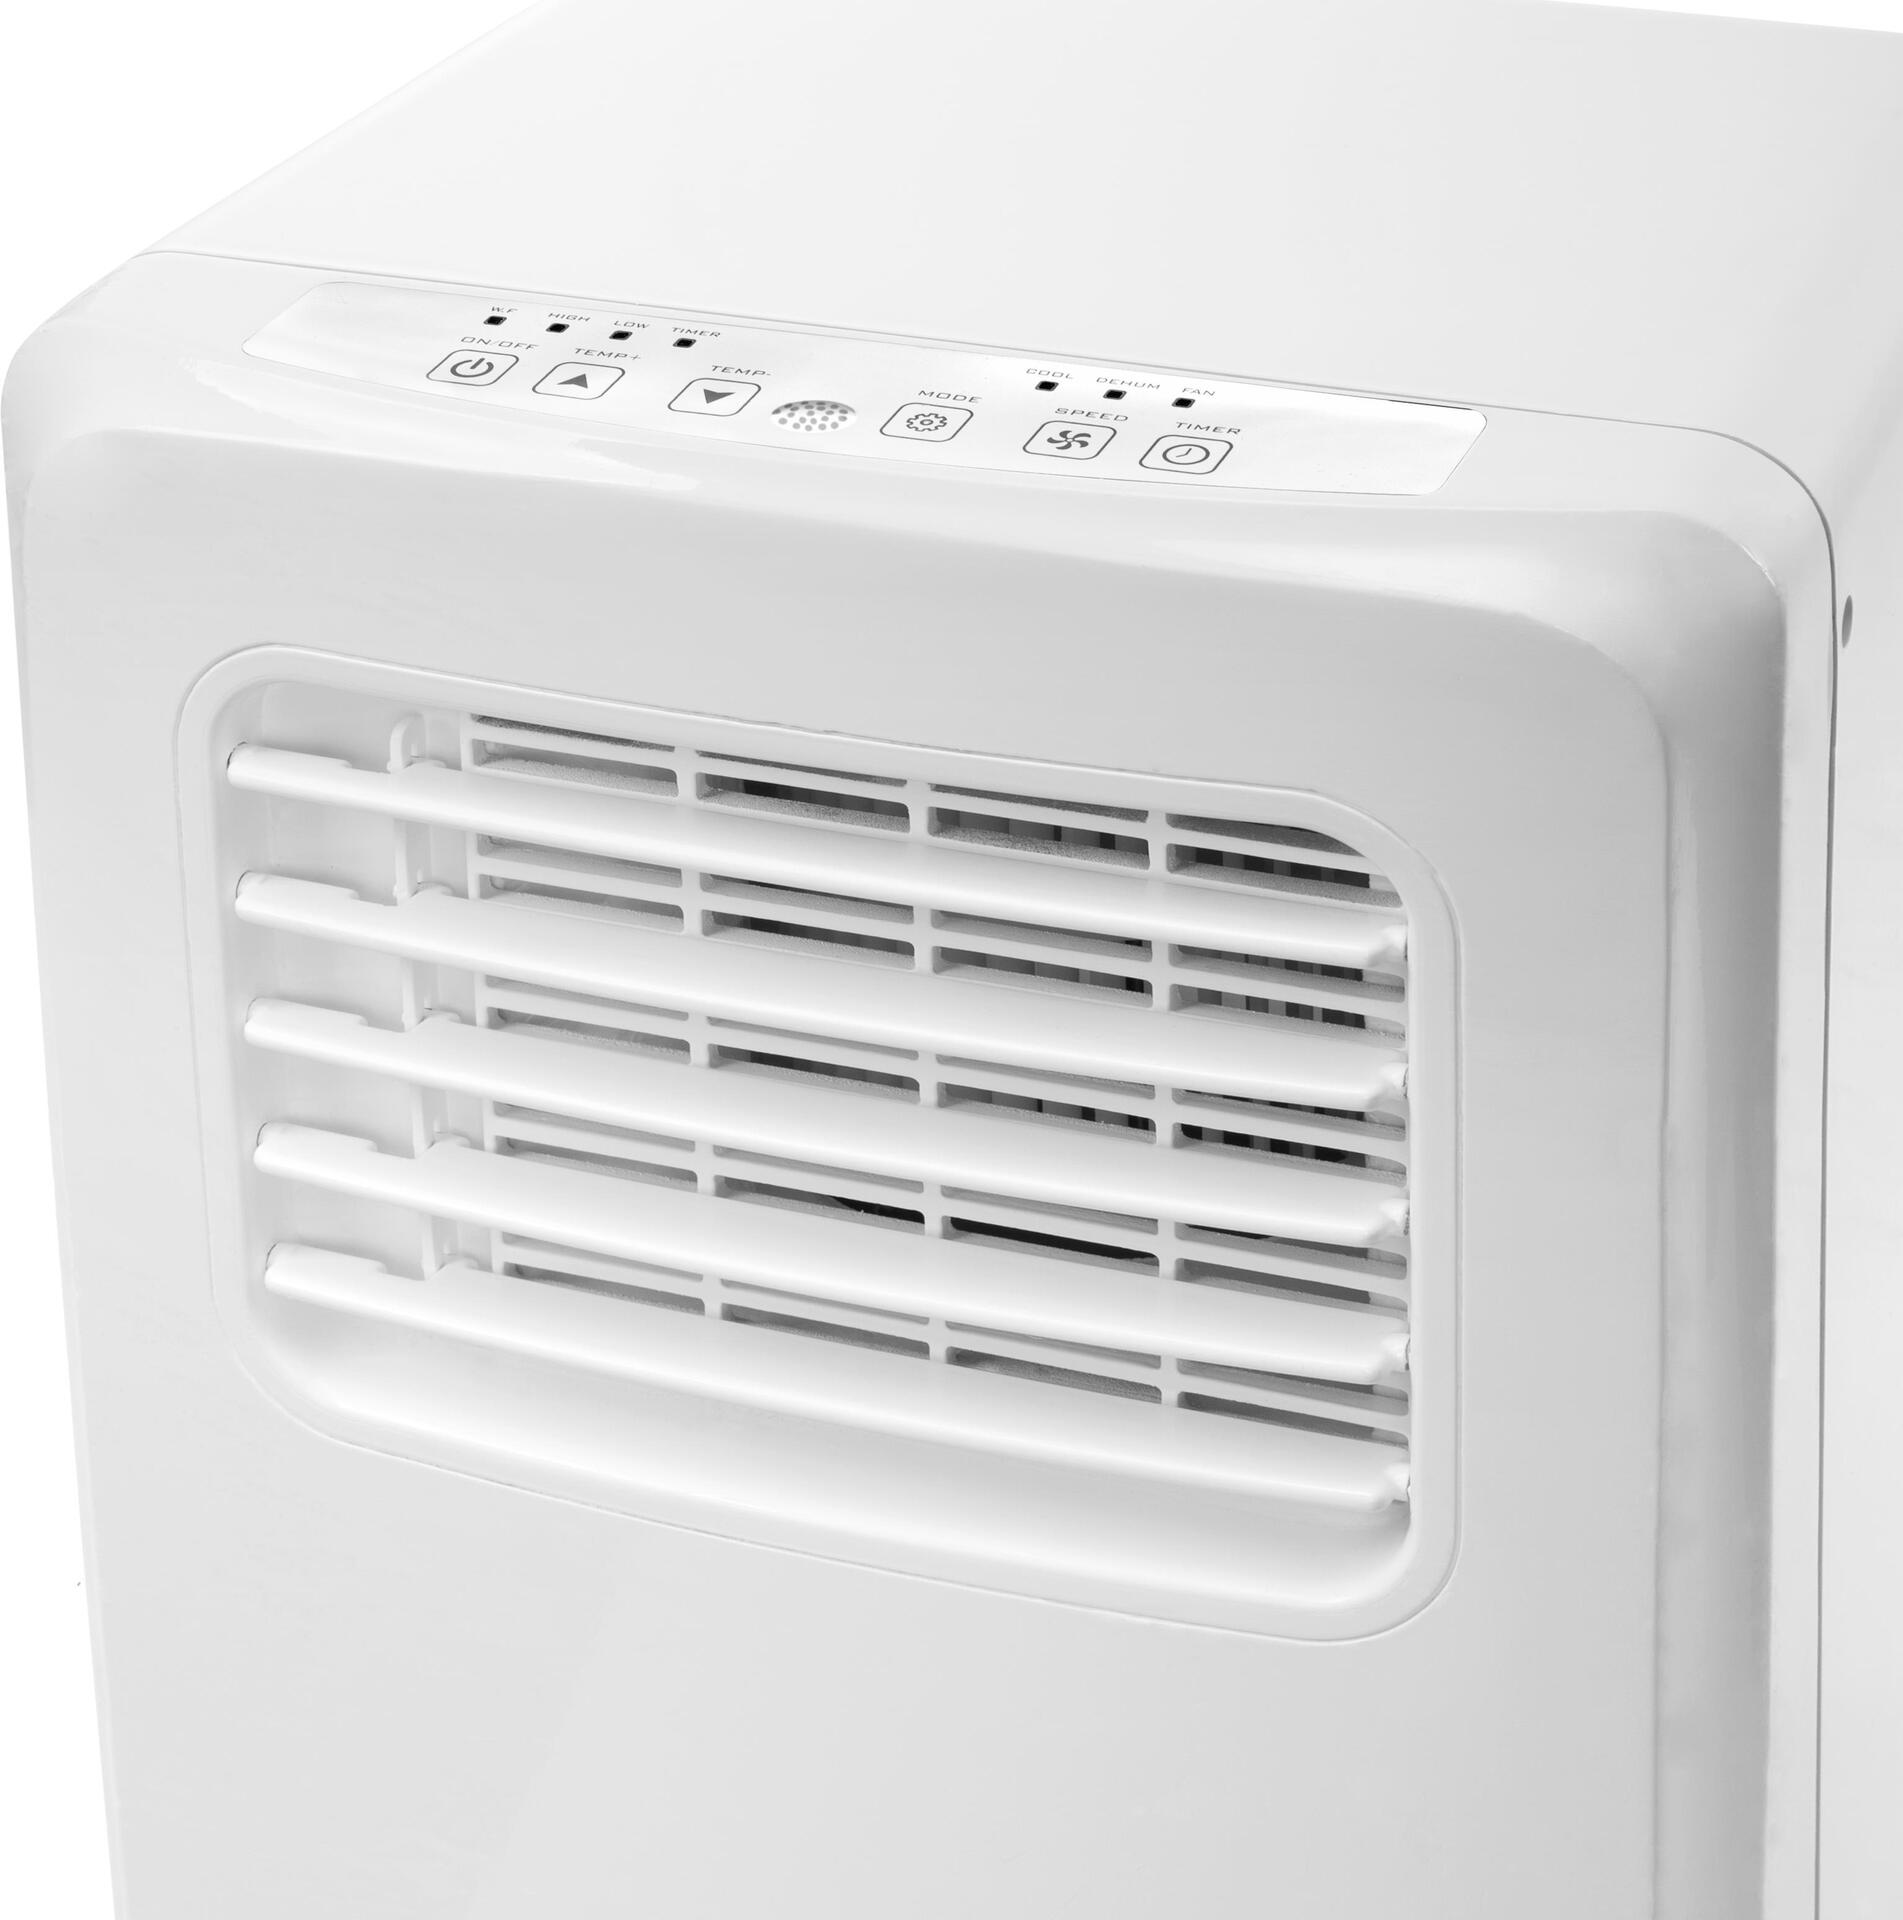 Tristar AC-5529 Klimagerät. Energieeffizienzklasse (Kühlen): A, Anschlusswert: 980 W. Produktfarbe: Weiß. Gewicht: 19 kg, Verpackungsbreite: 318 mm, Verpackungstiefe: 373 mm (AC-5529)